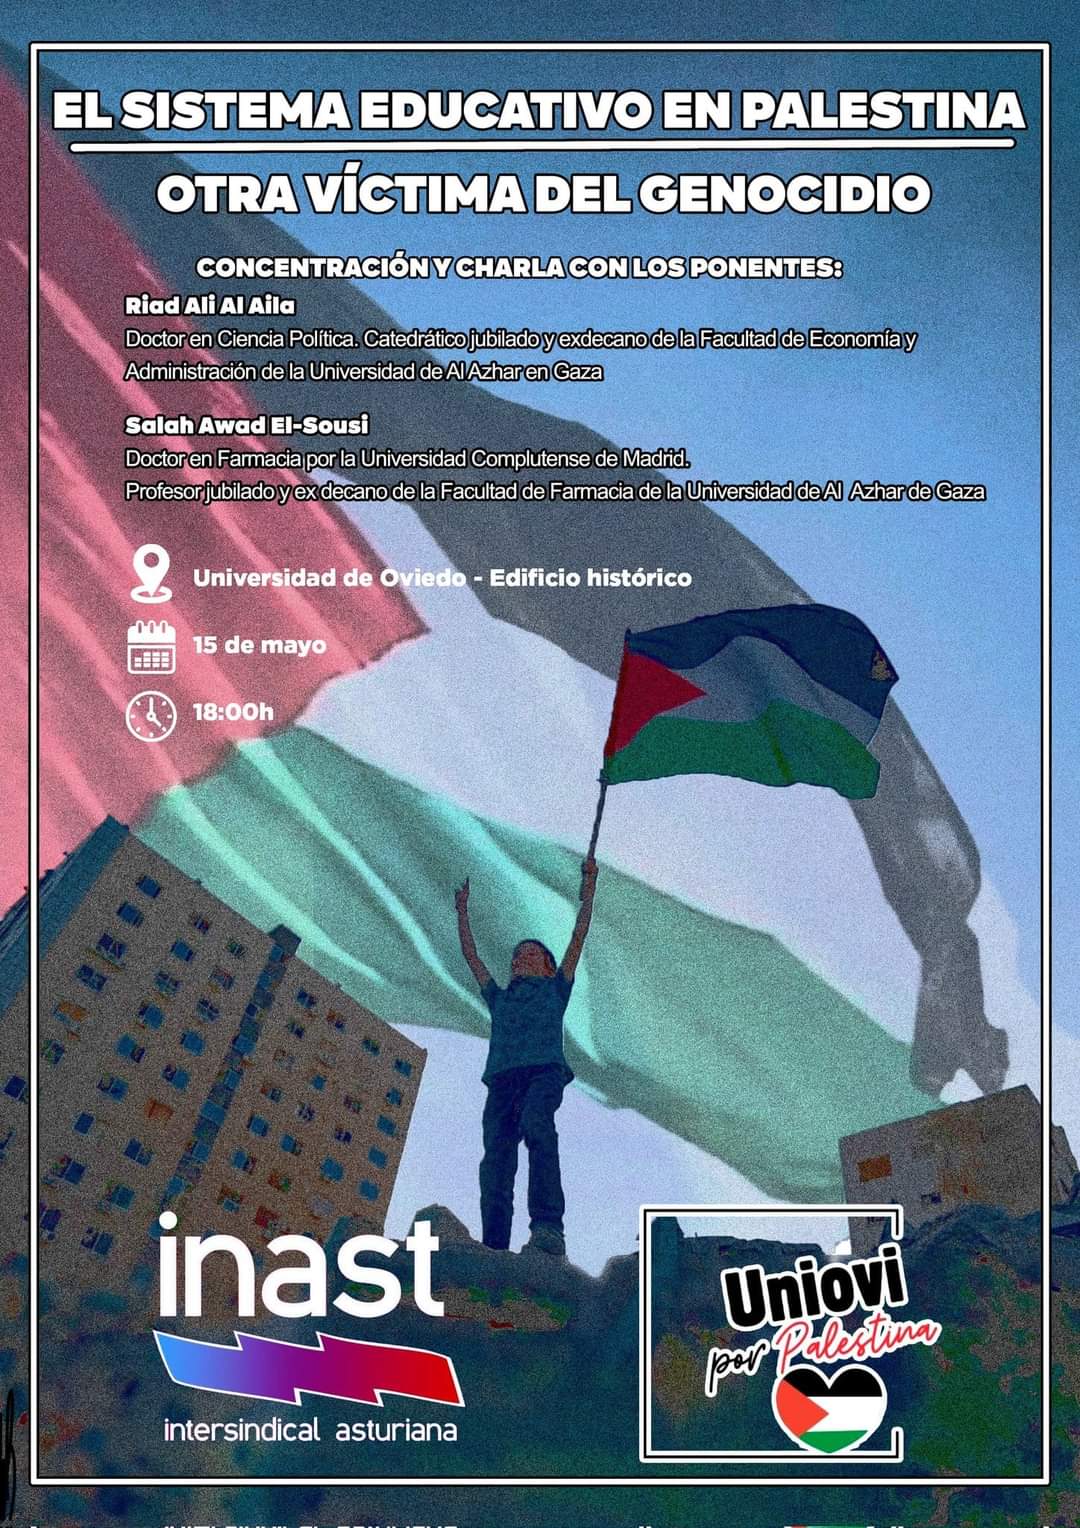 uniovi palestina